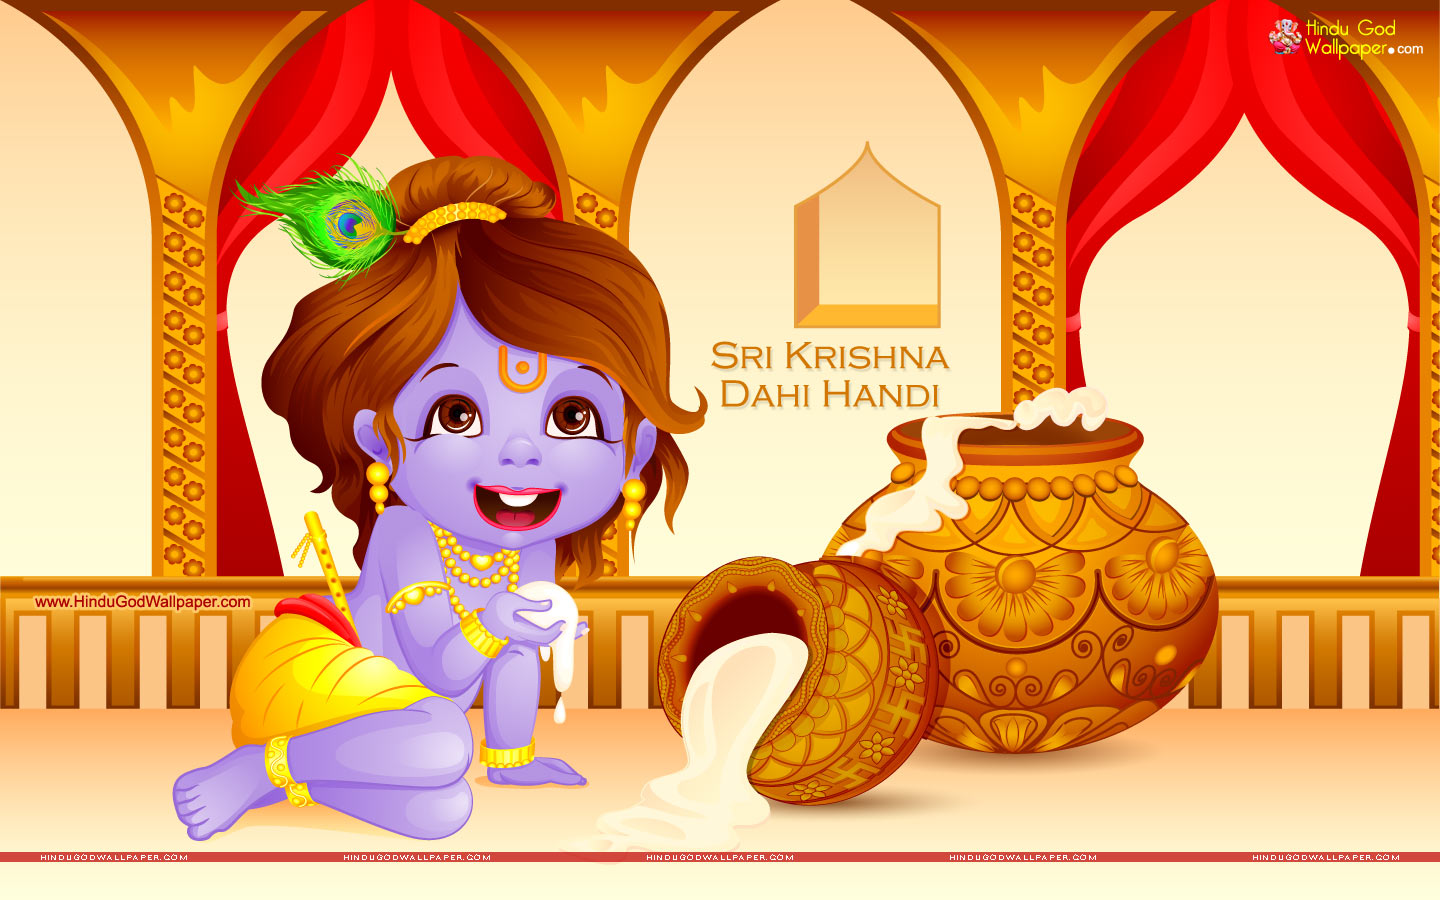 Sri Krishna Dahi Handi